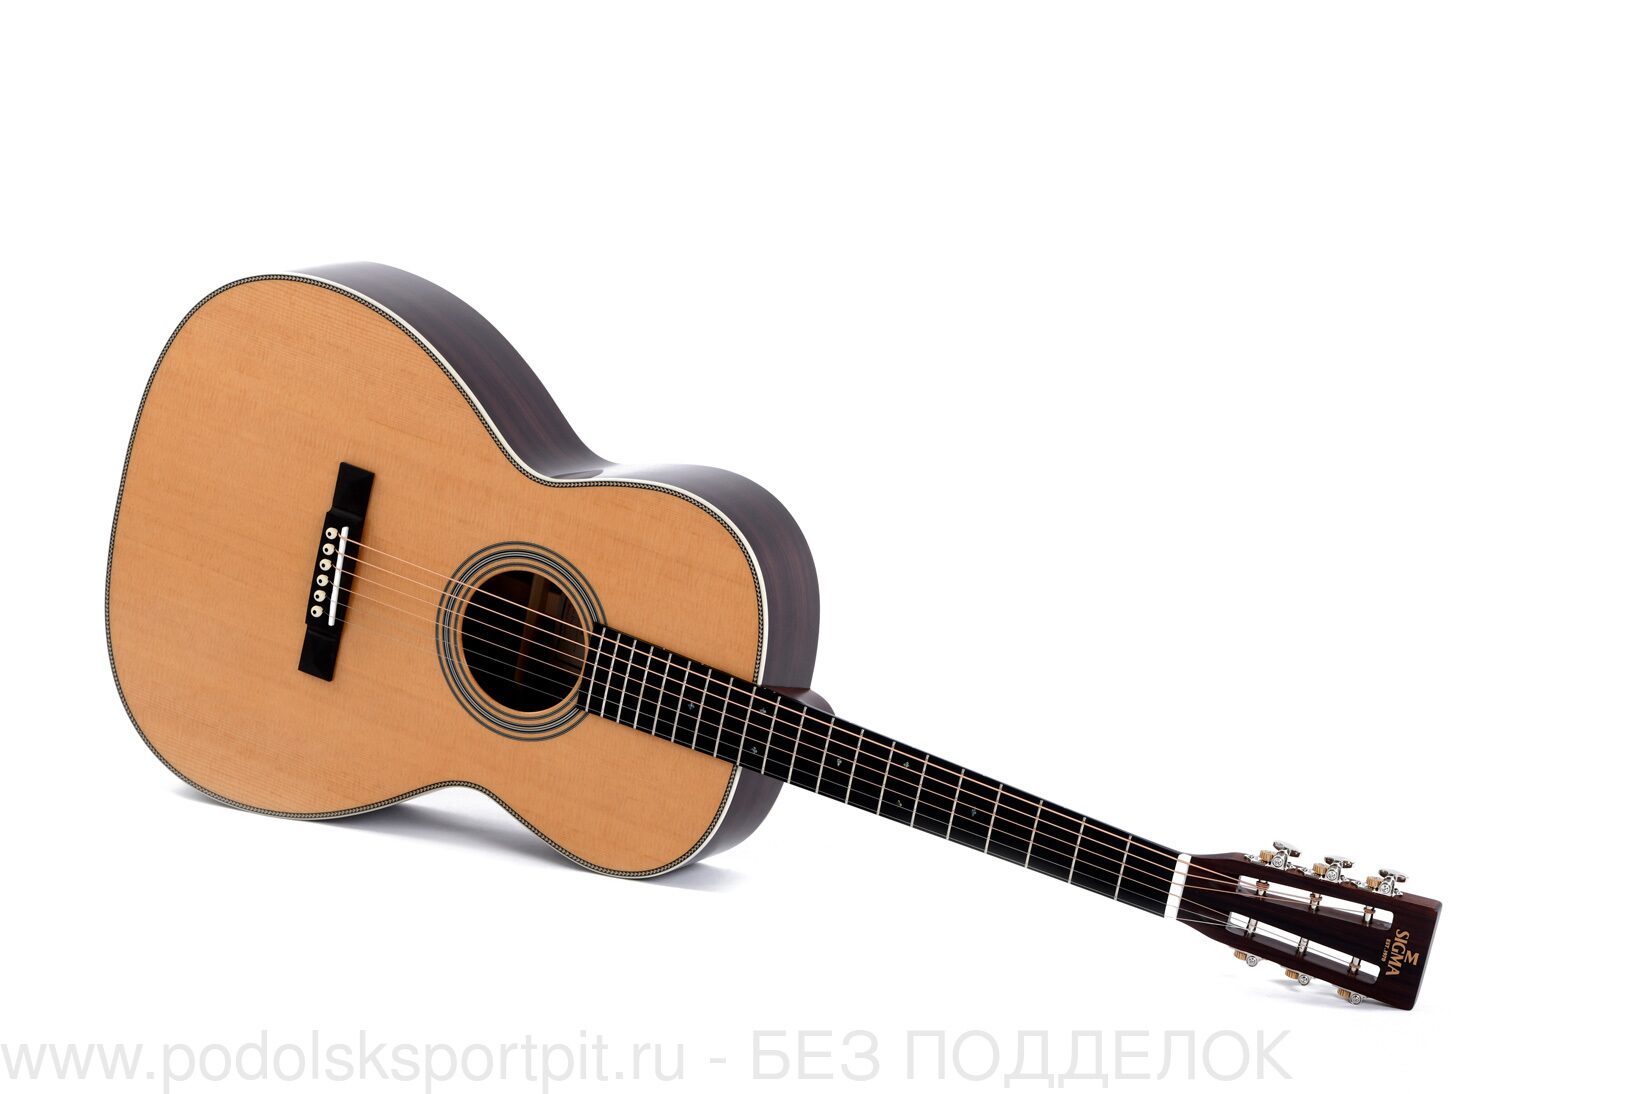 Акустическая гитара Sigma 000T-28S+